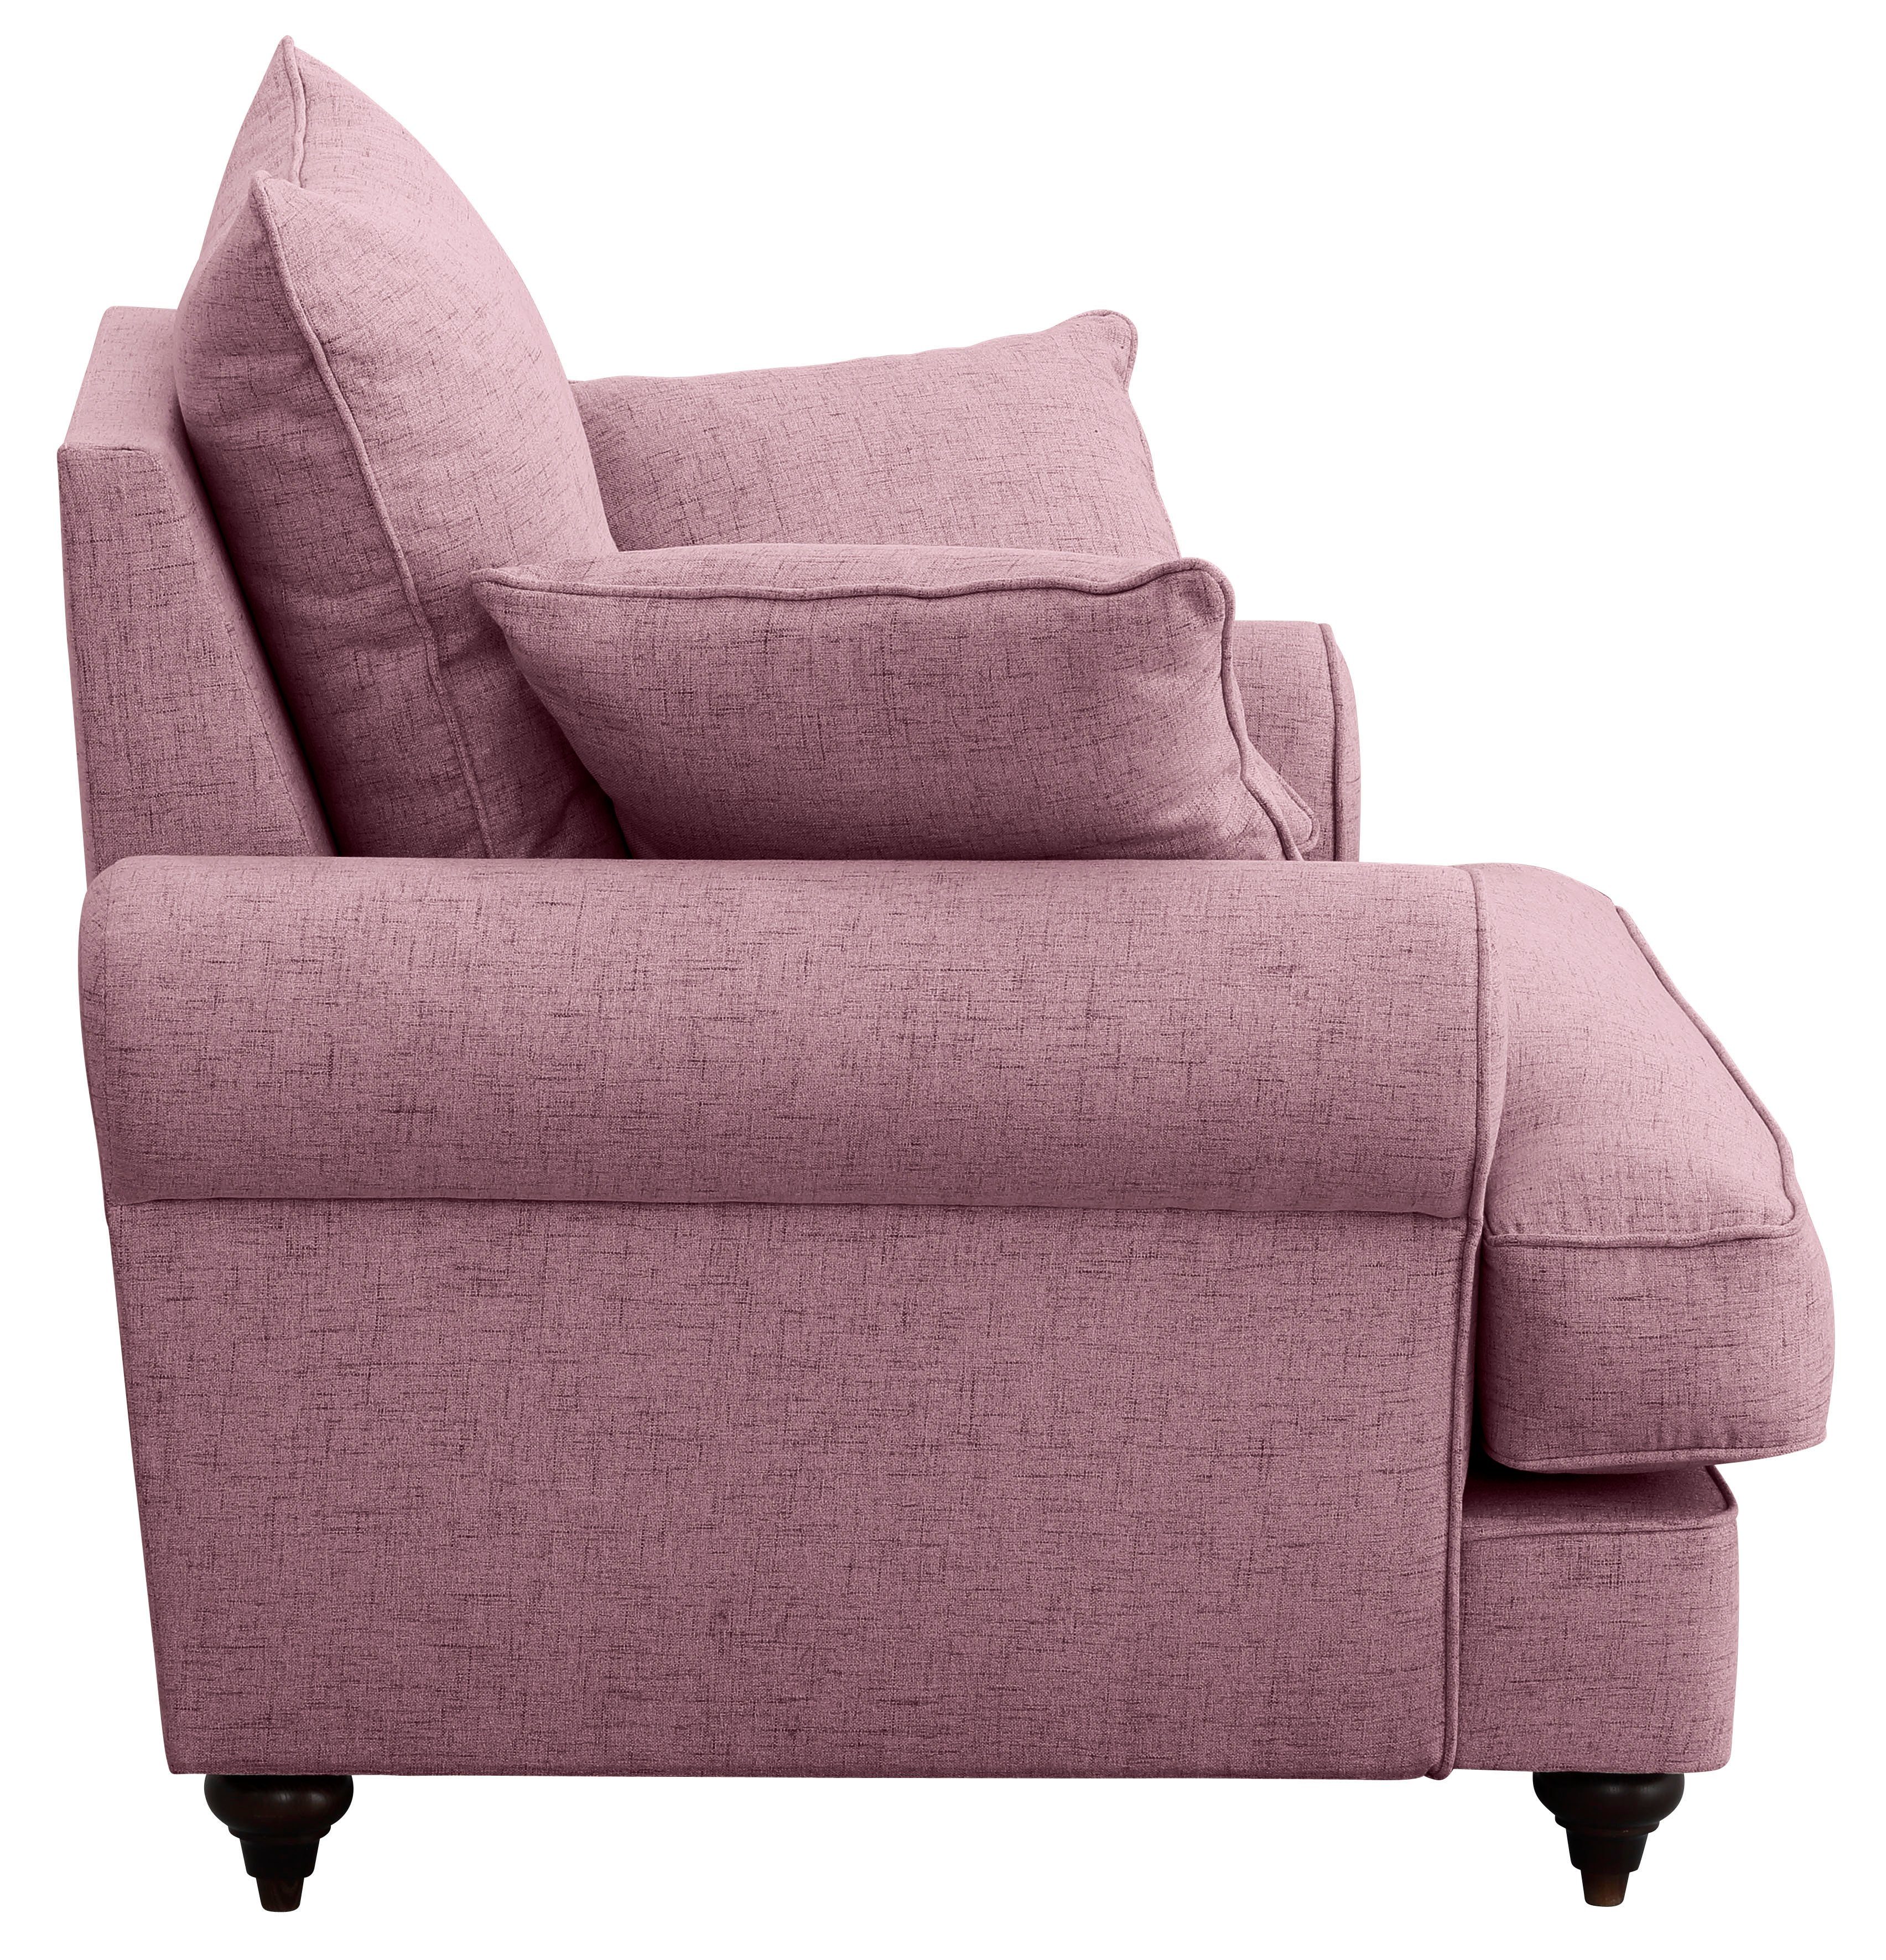 Home affaire Sessel mit erhältlich Bloomer, Kaltschaum, in hochwertigem violet verschiedenen Farben